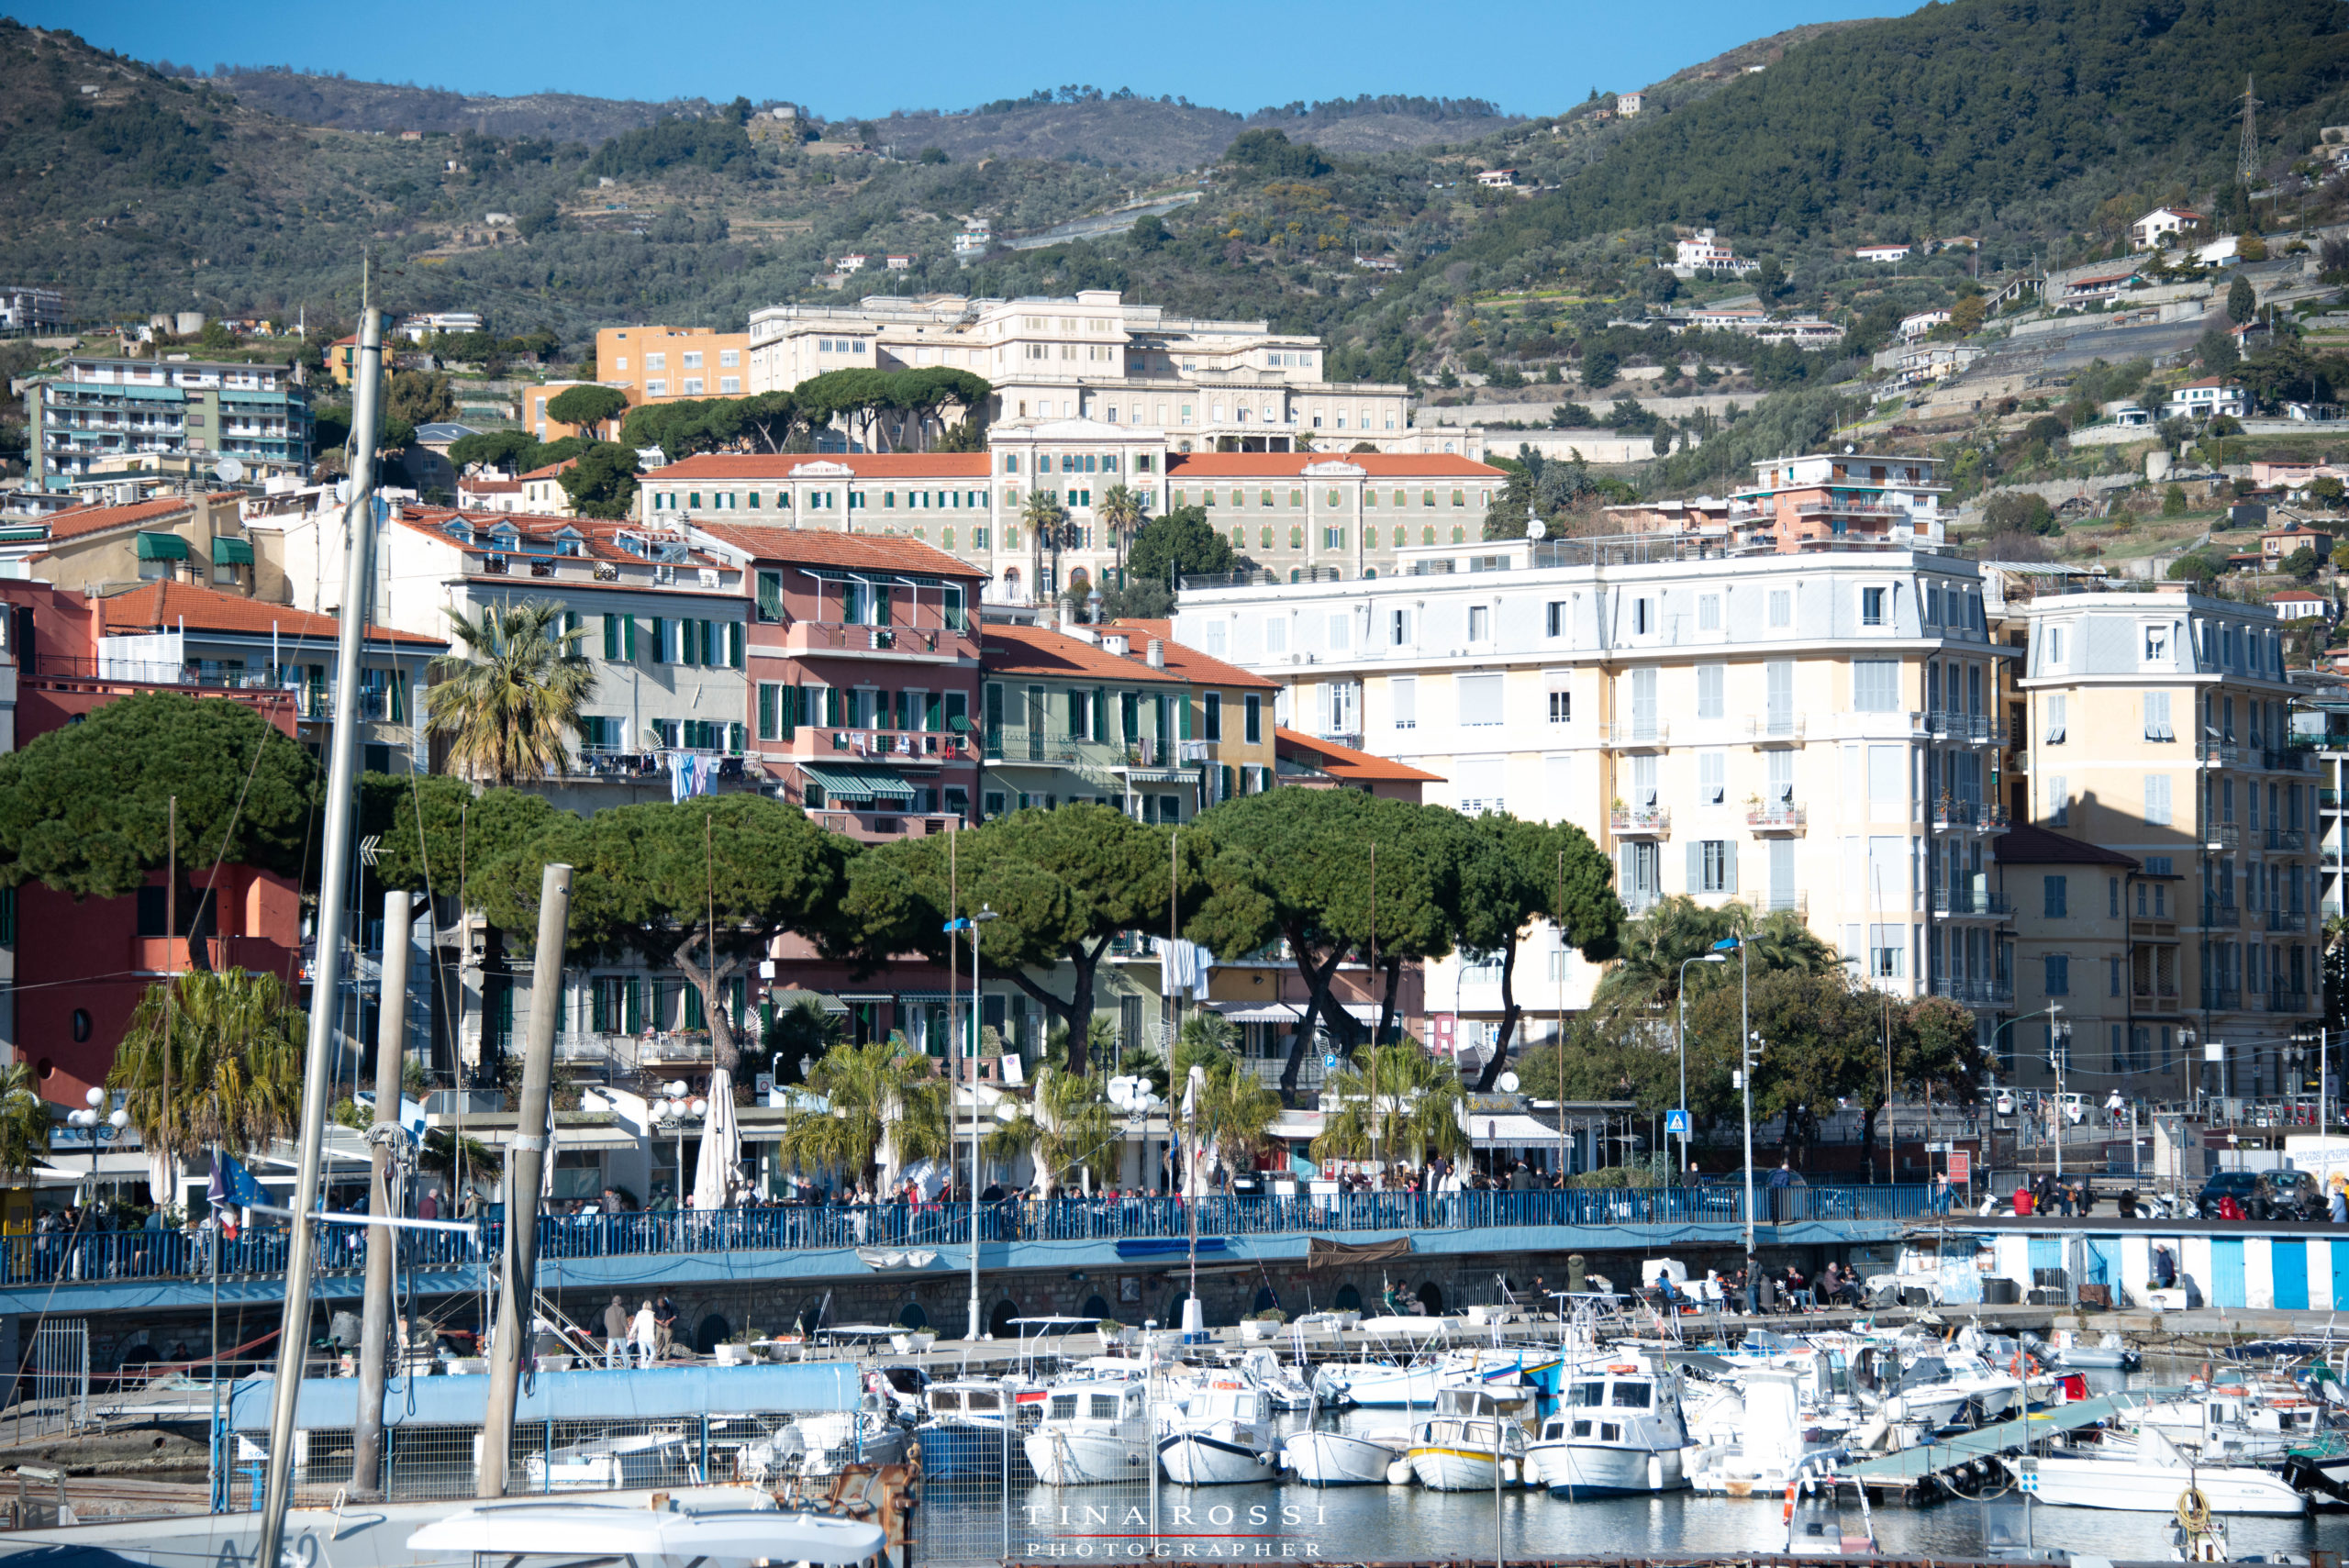 #Sanremo 02 . una veduta della citta di Sanremo , il porto con tante barche e navi e sullo sfondo la montagna con tutto il paese sulla costa